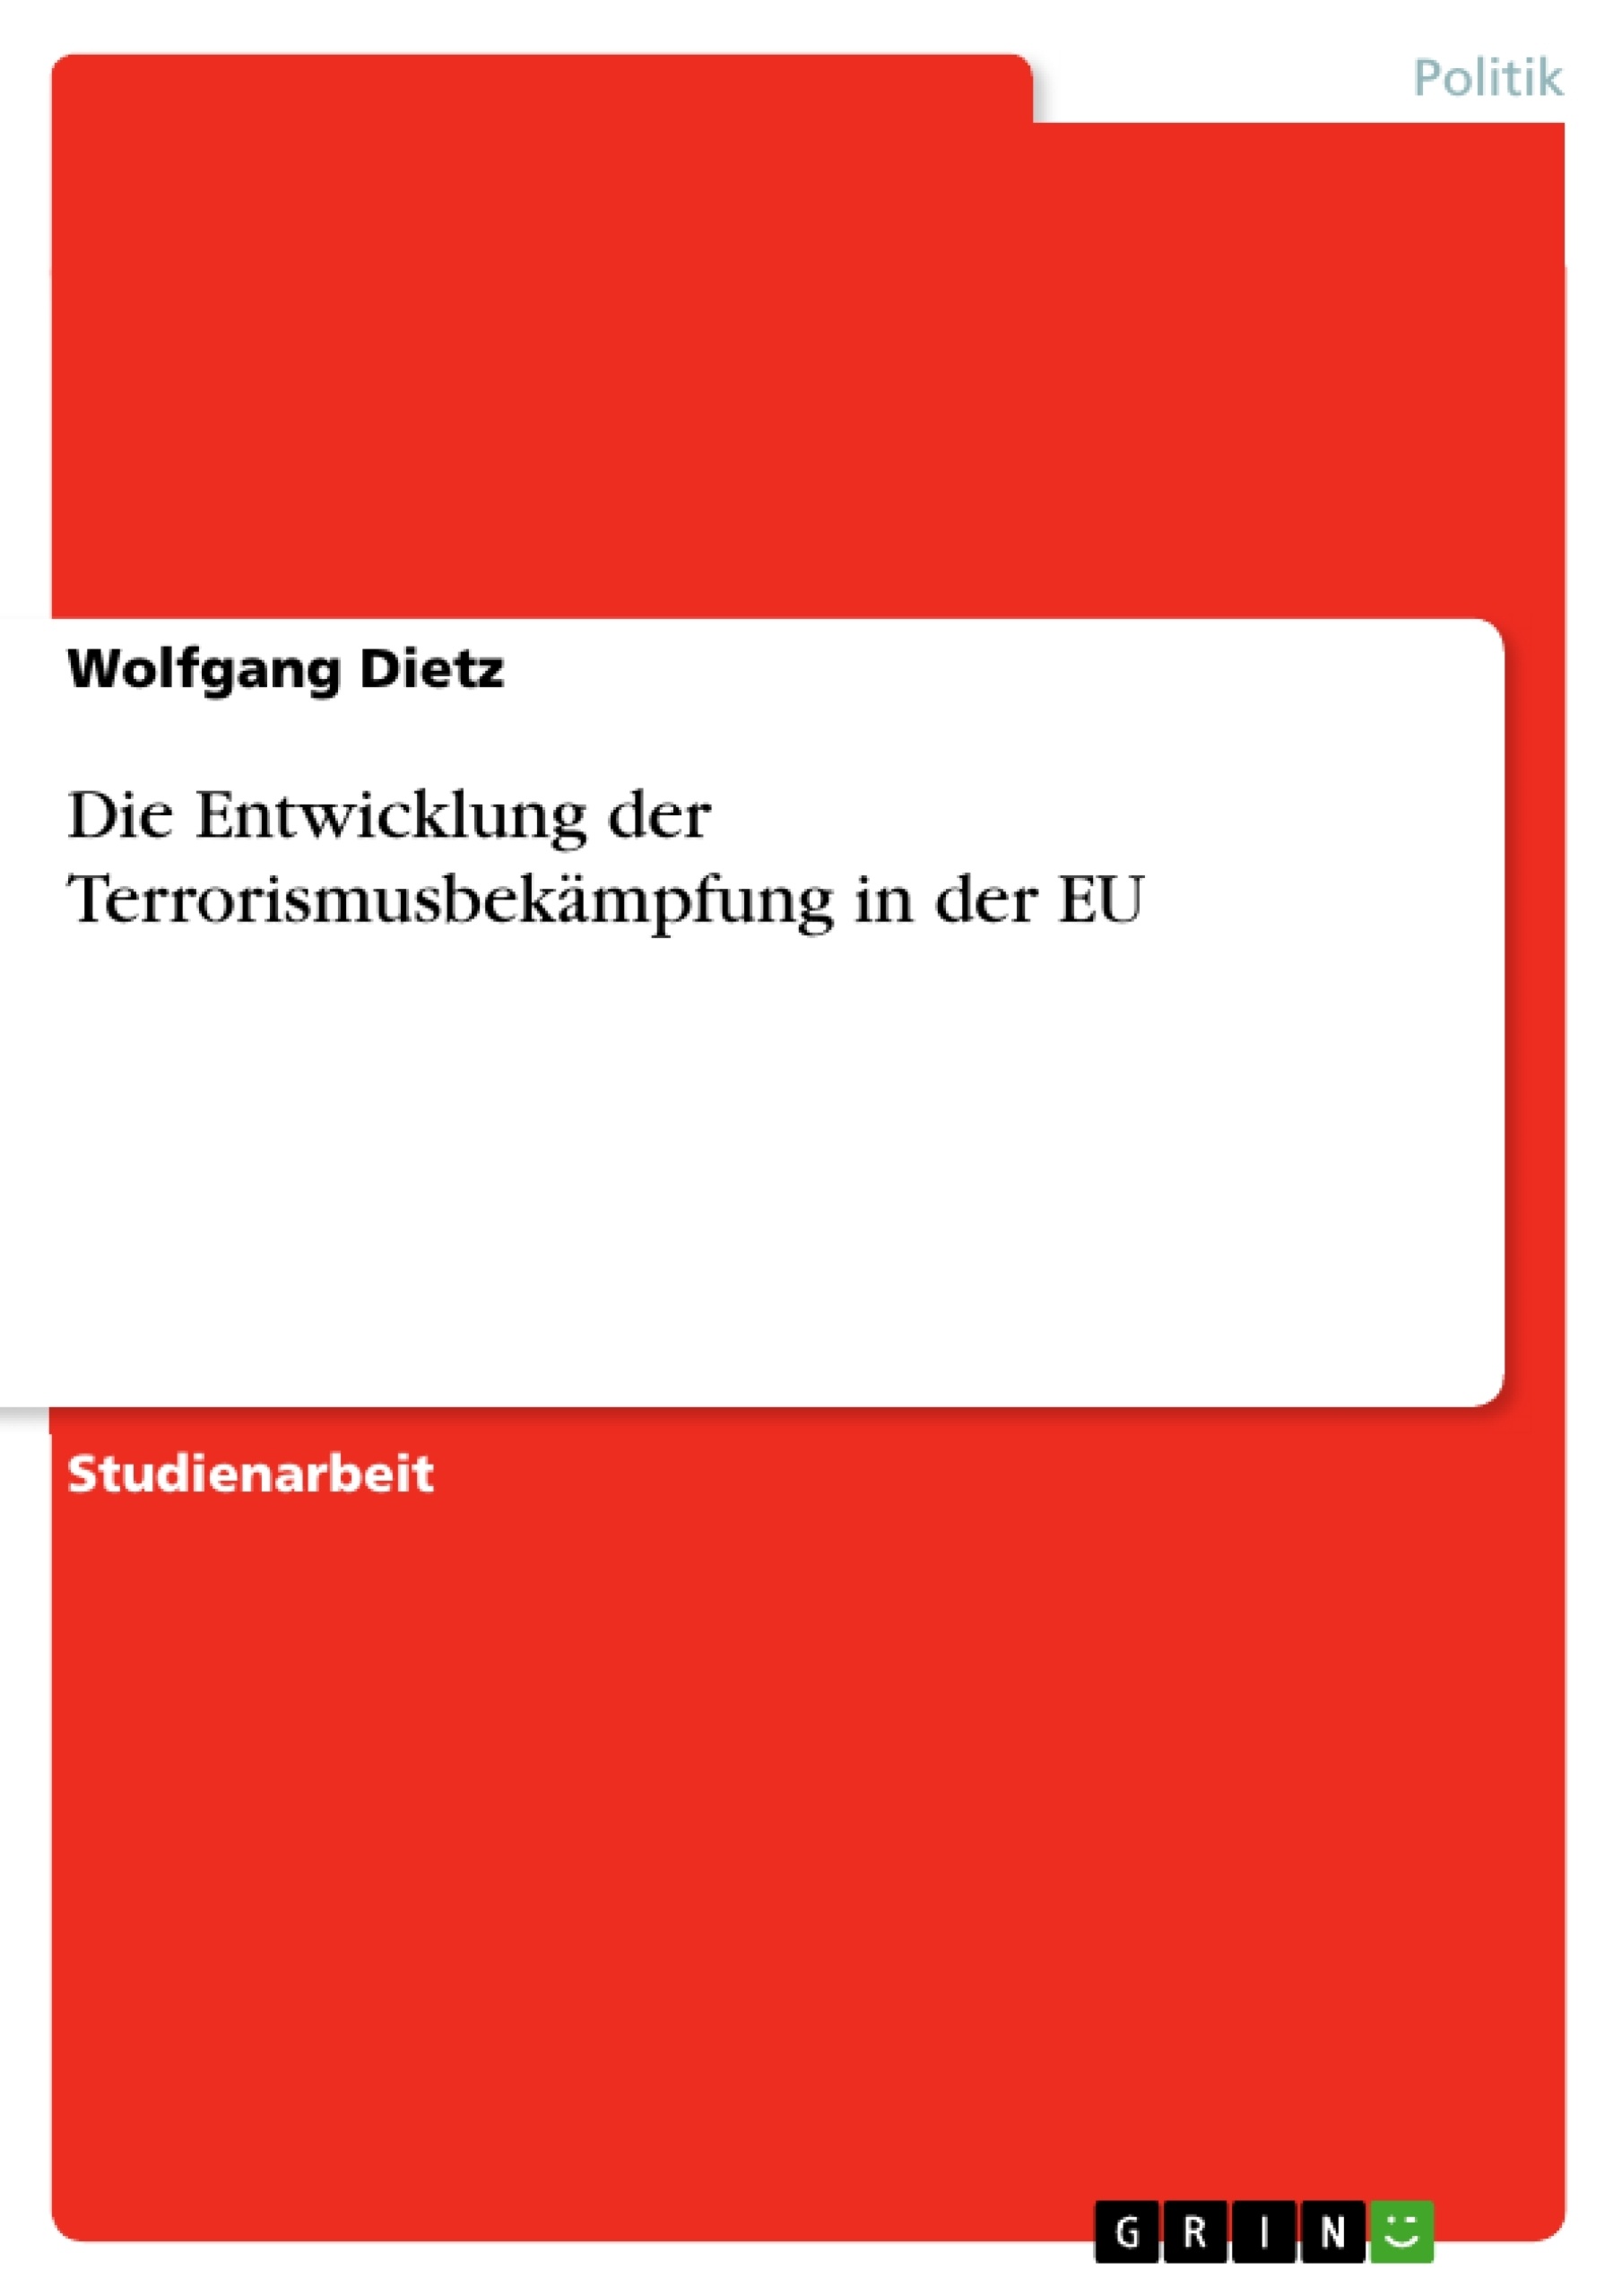 Title: Die Entwicklung der Terrorismusbekämpfung in der EU